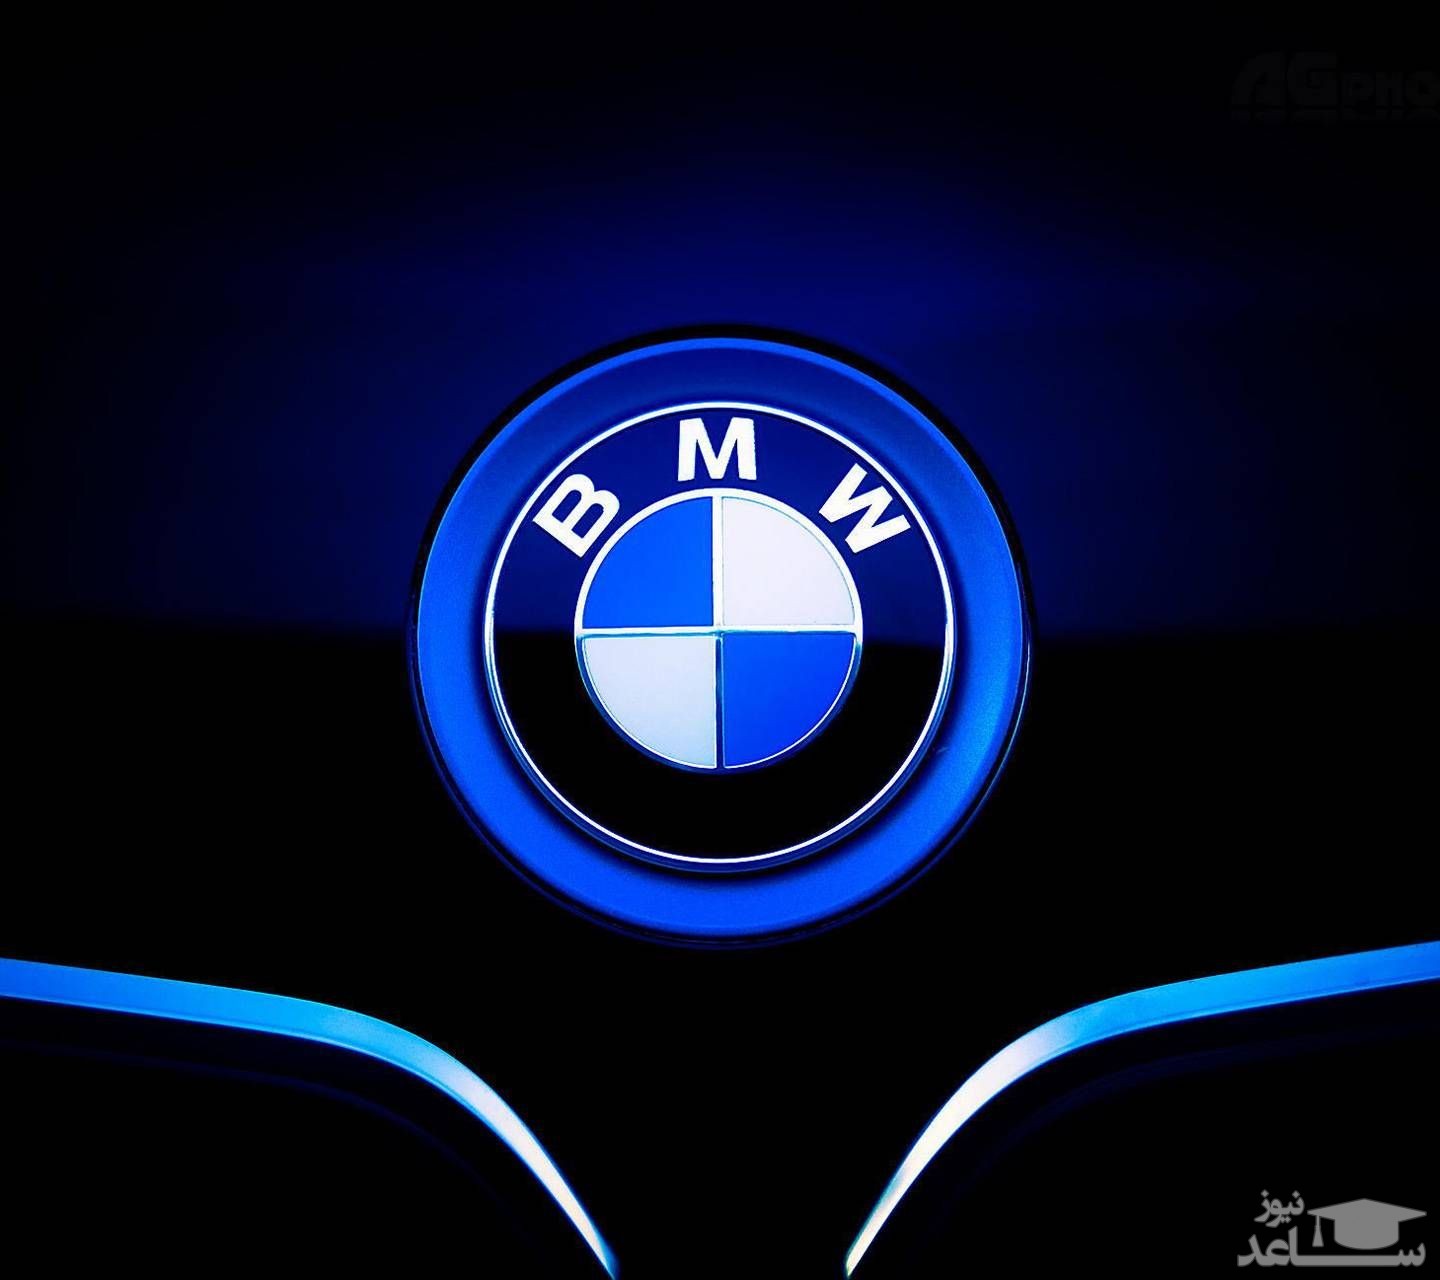 تاریخچه برند BMW، شرکت خودروسازی لوکس